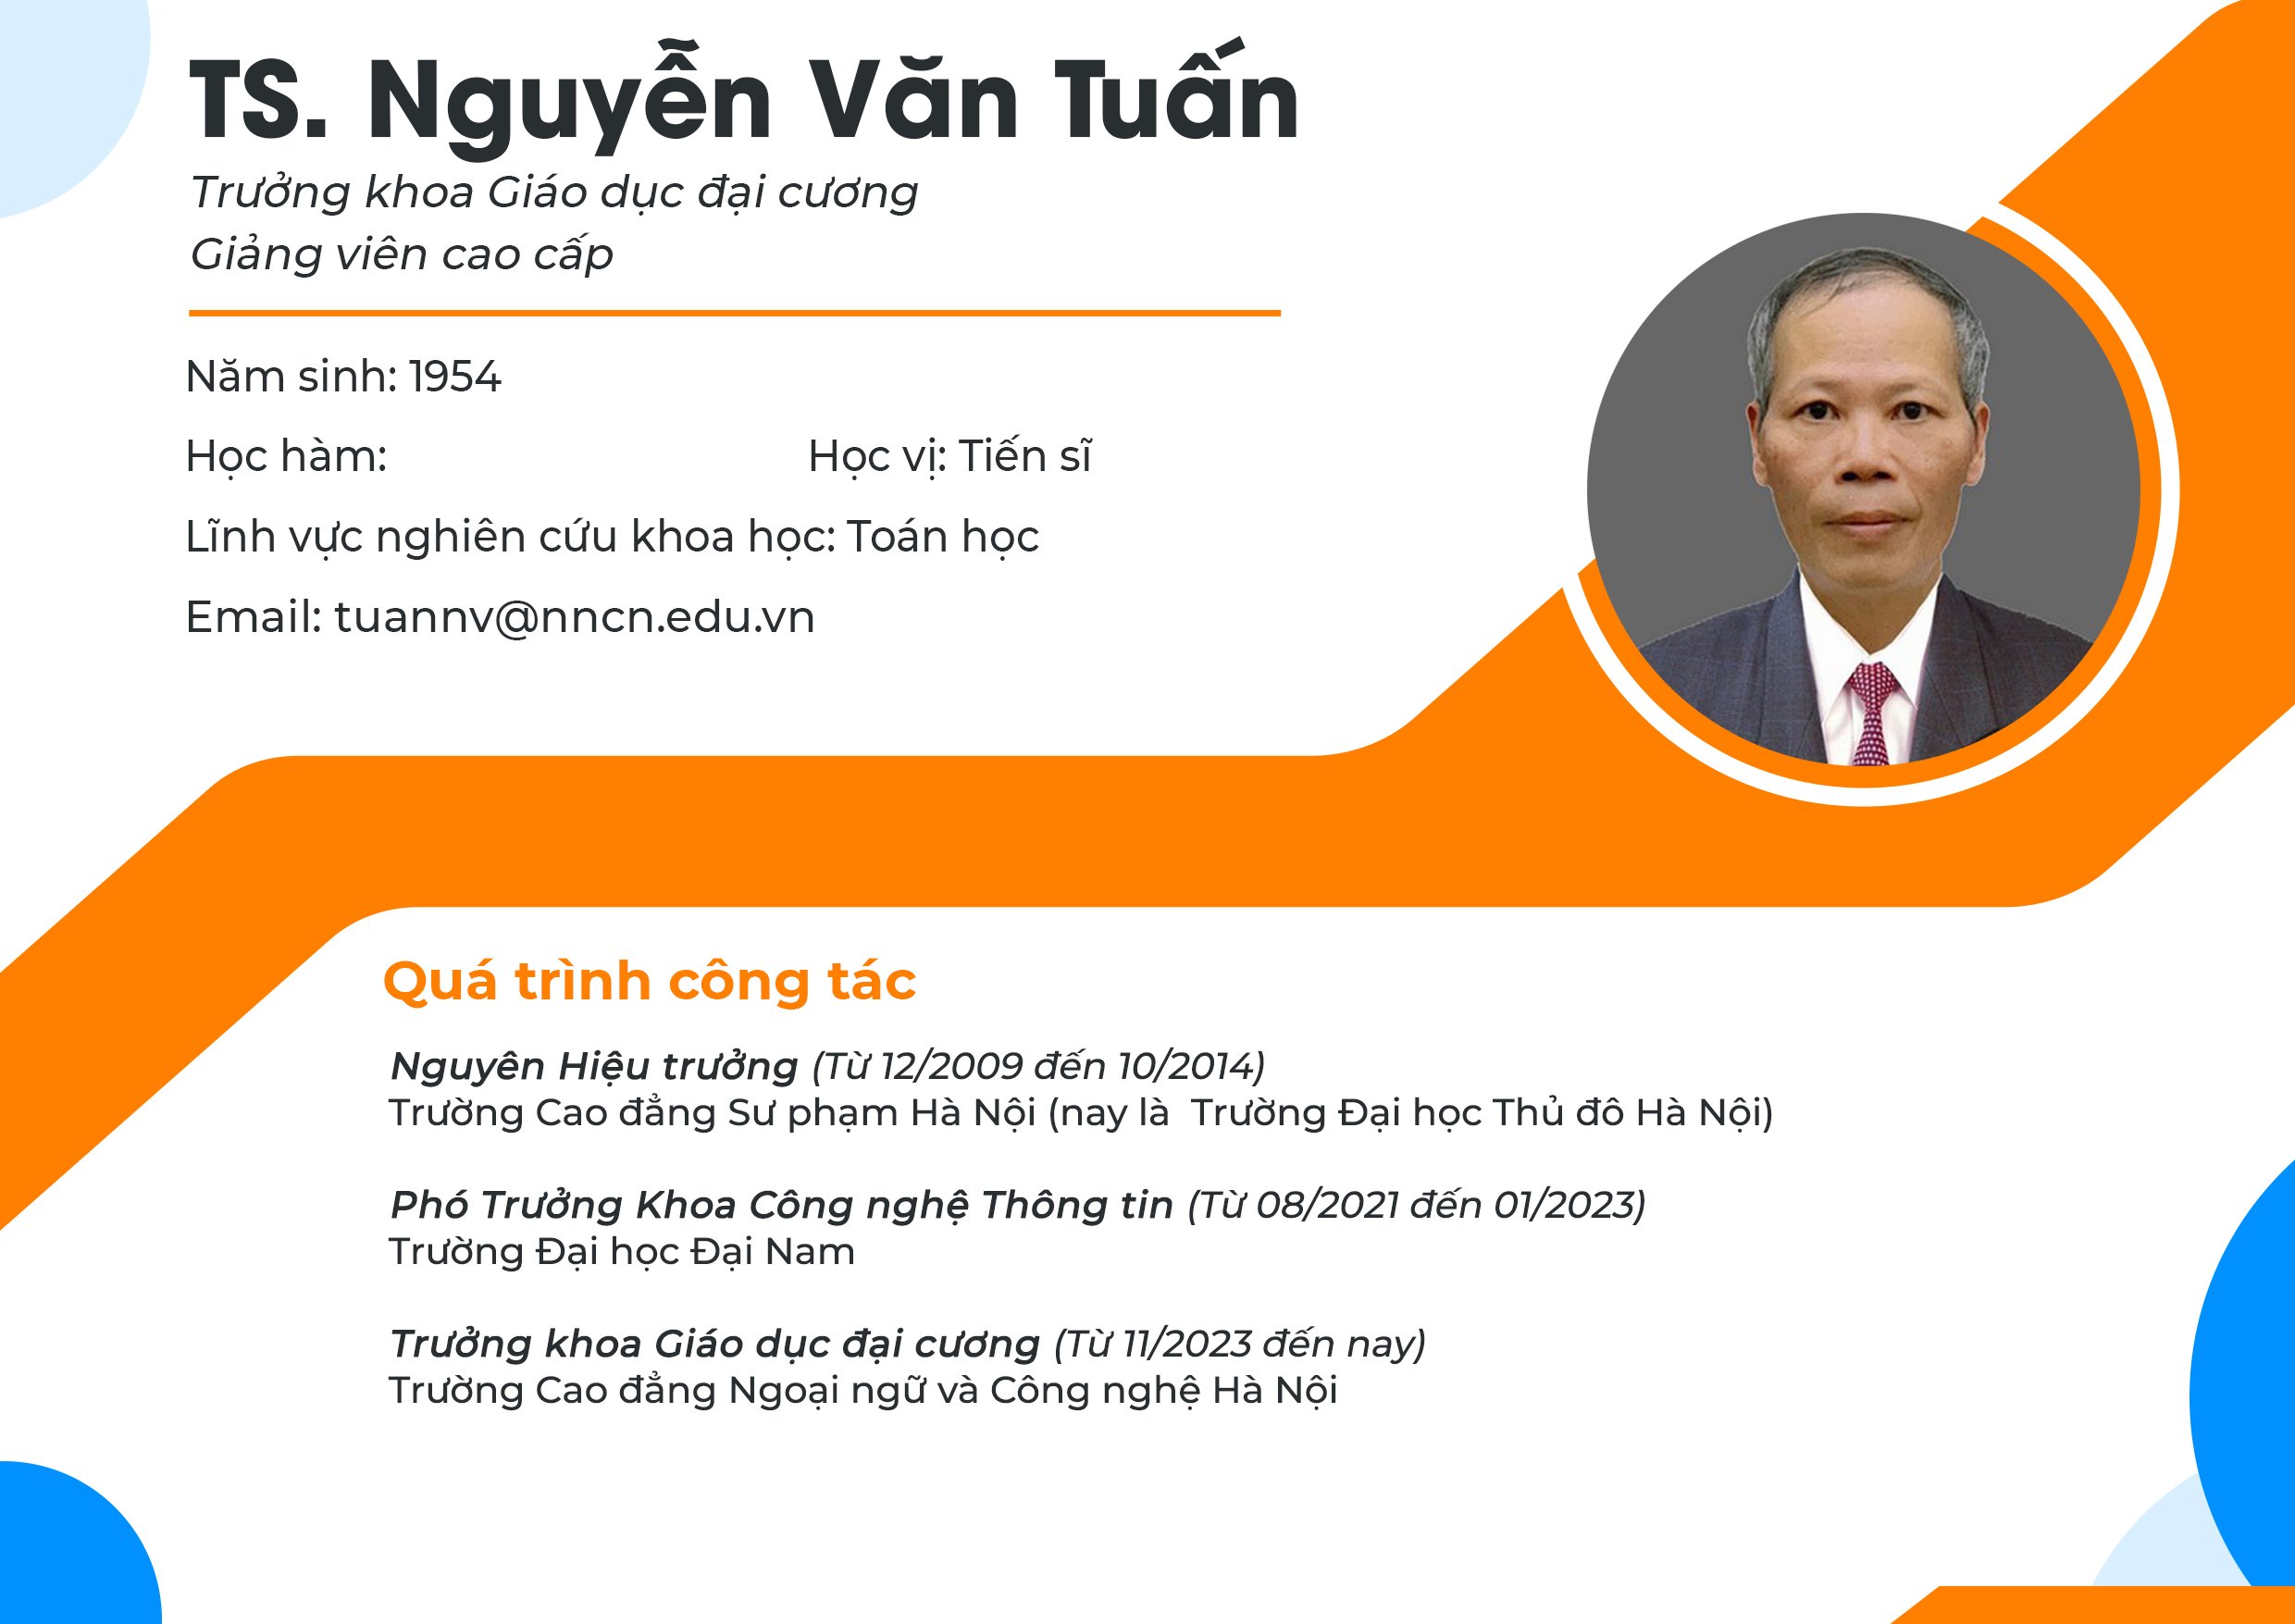 Giới thiệu khái quát về TS. Nguyễn Văn Tuấn - Trưởng Khoa Giáo dục đại cương